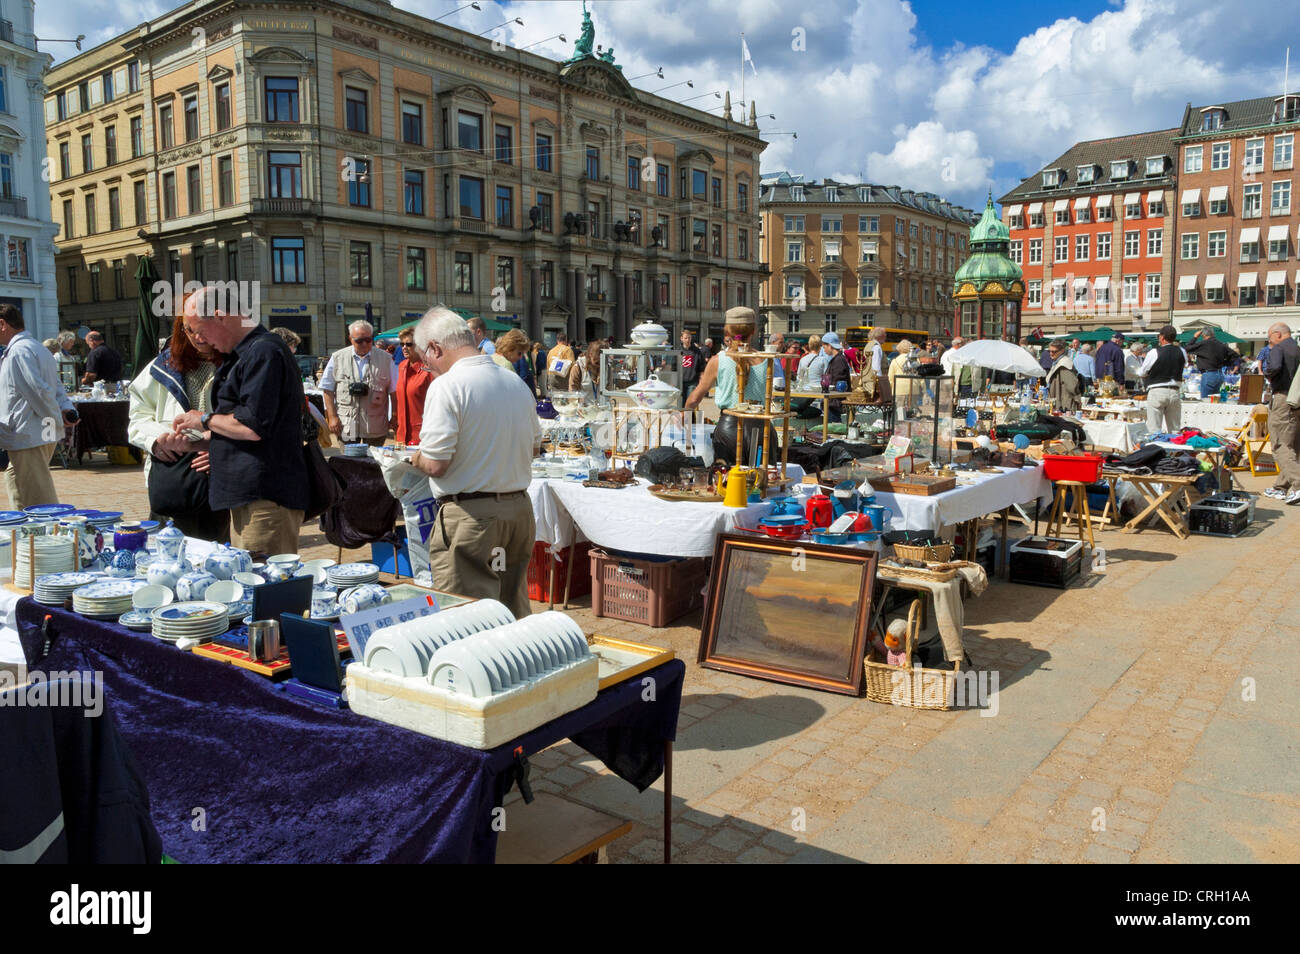 Kopenhagen, Dänemark - Menschen Einkaufen in der open-air-Straße Markt, Flohmarkt Antiquitäten Markt des Nyhavn, Altstadt, Kopenhagen, Dänemark Stockfoto